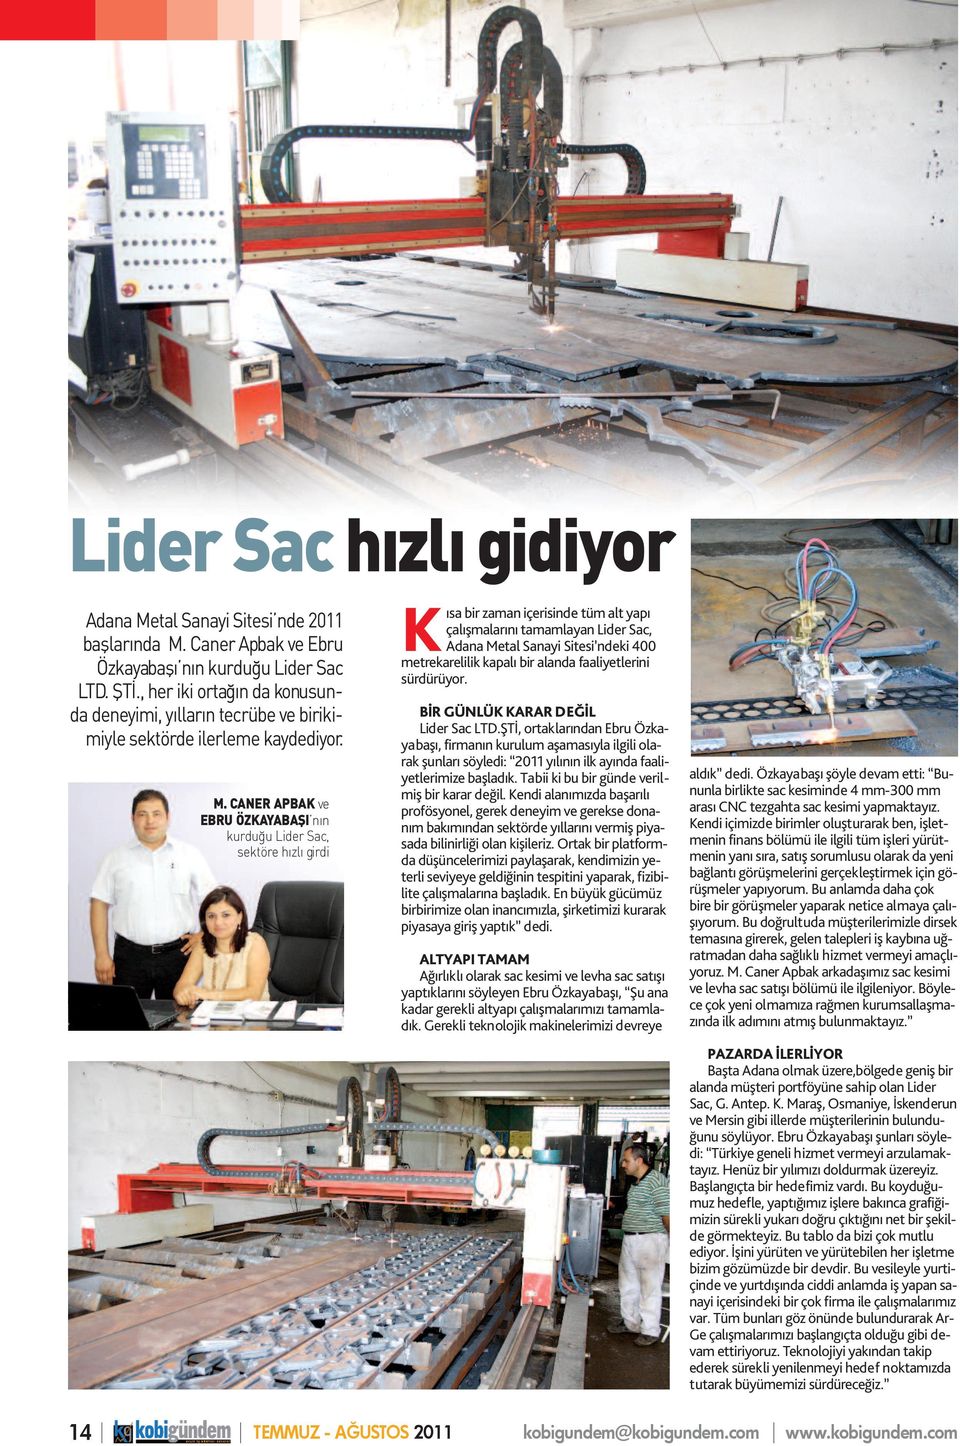 CANER APBAK ve EBRU ÖZKAYABAŞI nın kurduğu Lider Sac, sektöre hızlı girdi Kısa bir zaman içerisinde tüm alt yapı çalışmalarını tamamlayan Lider Sac, Adana Metal Sanayi Sitesi ndeki 400 metrekarelilik